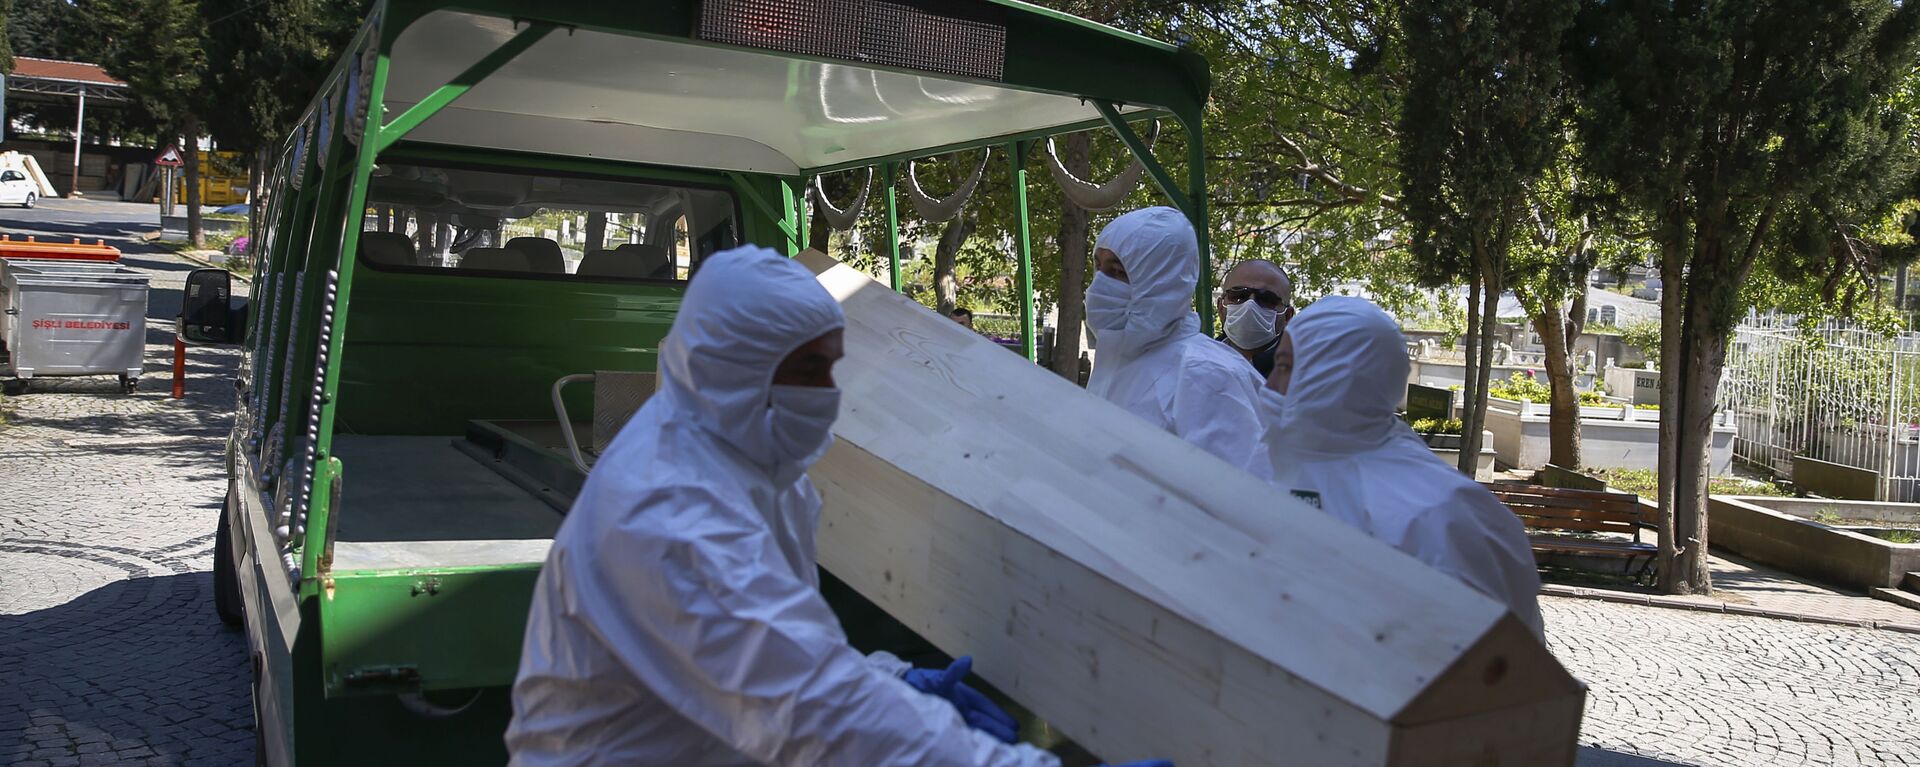 Работники морга погружают гроб с погибшим от коронавируса, архивное фото - Sputnik Тоҷикистон, 1920, 02.07.2021